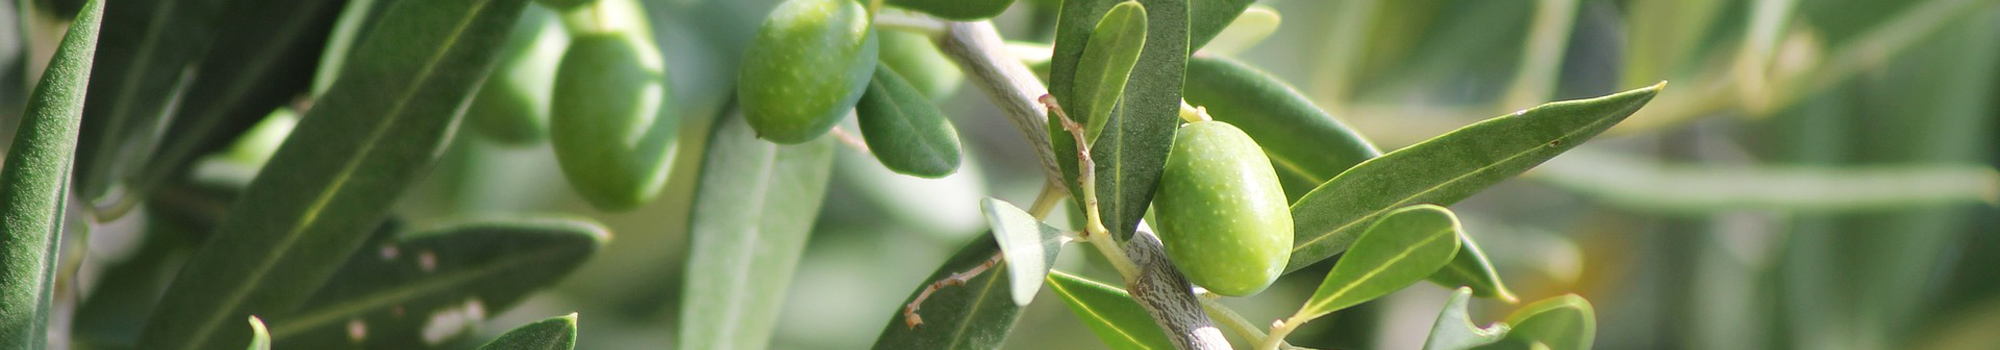 Peigne vibreur Olivella Midi pour la récolte des olives